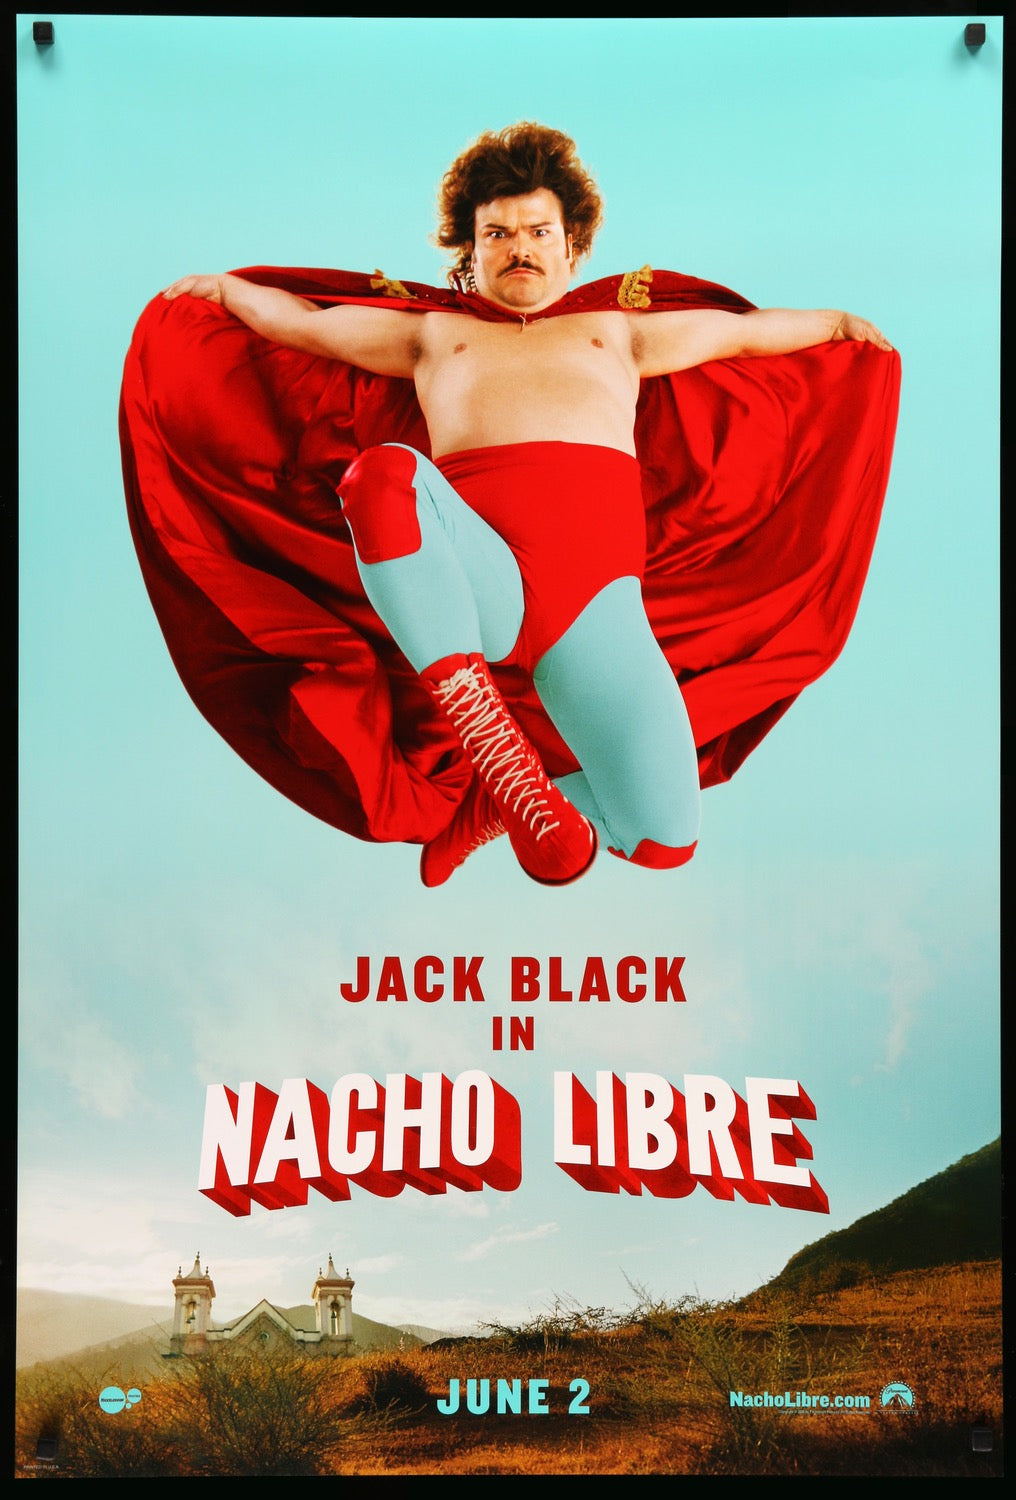 Nacho Libre (2006) original movie poster for sale at Original Film Art